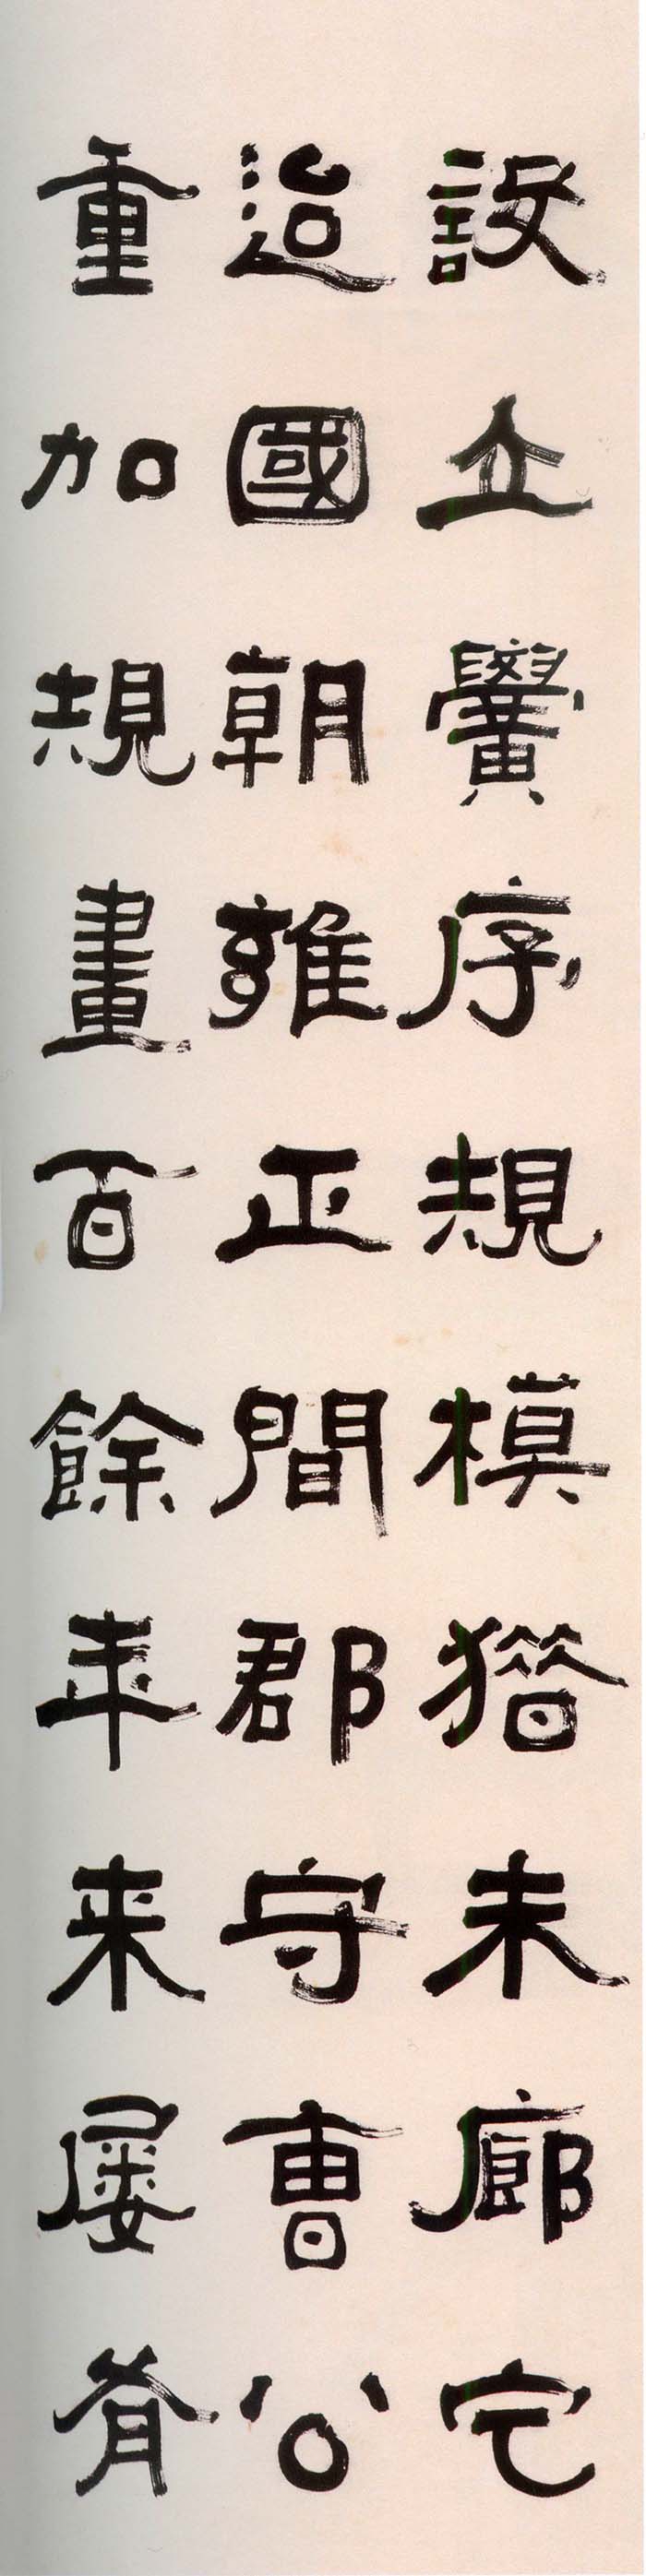 张祖翼《隶书集碑记四条屏》- 常州市博物馆藏 (图5)